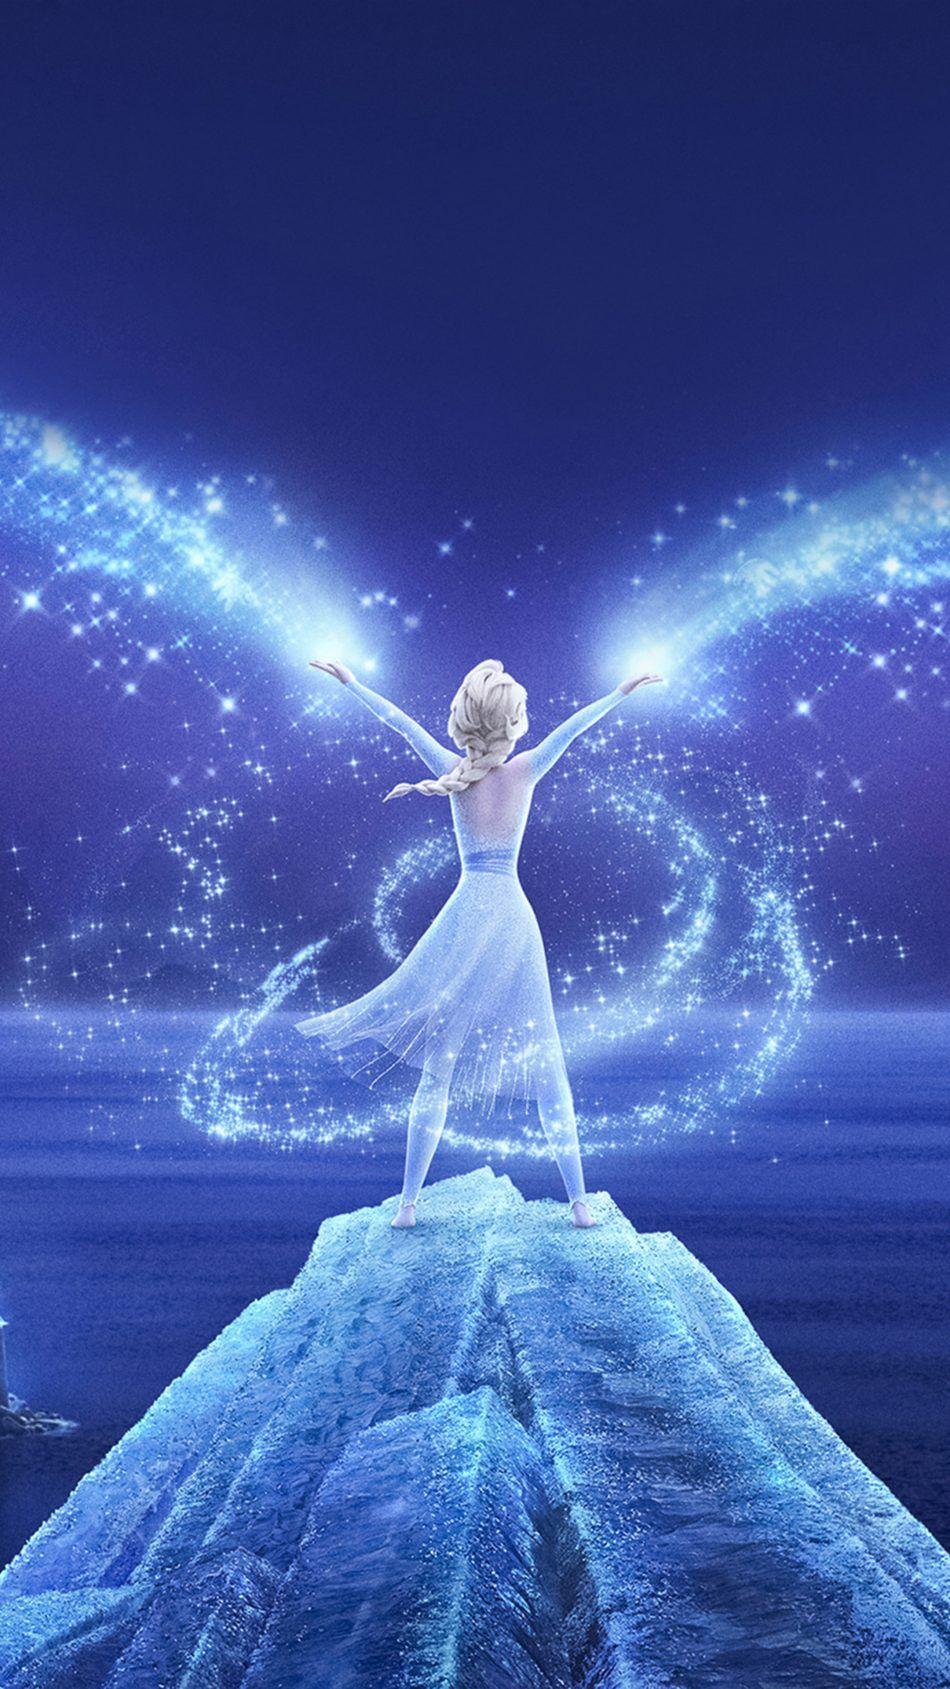 Queen Elsa Frozen 2 2019 4K Ultra HD Mobile Wallpaper. Fondo de pantalla princesas, Fondo de pantalla de frozen, Fondo de pantalla princesa disney